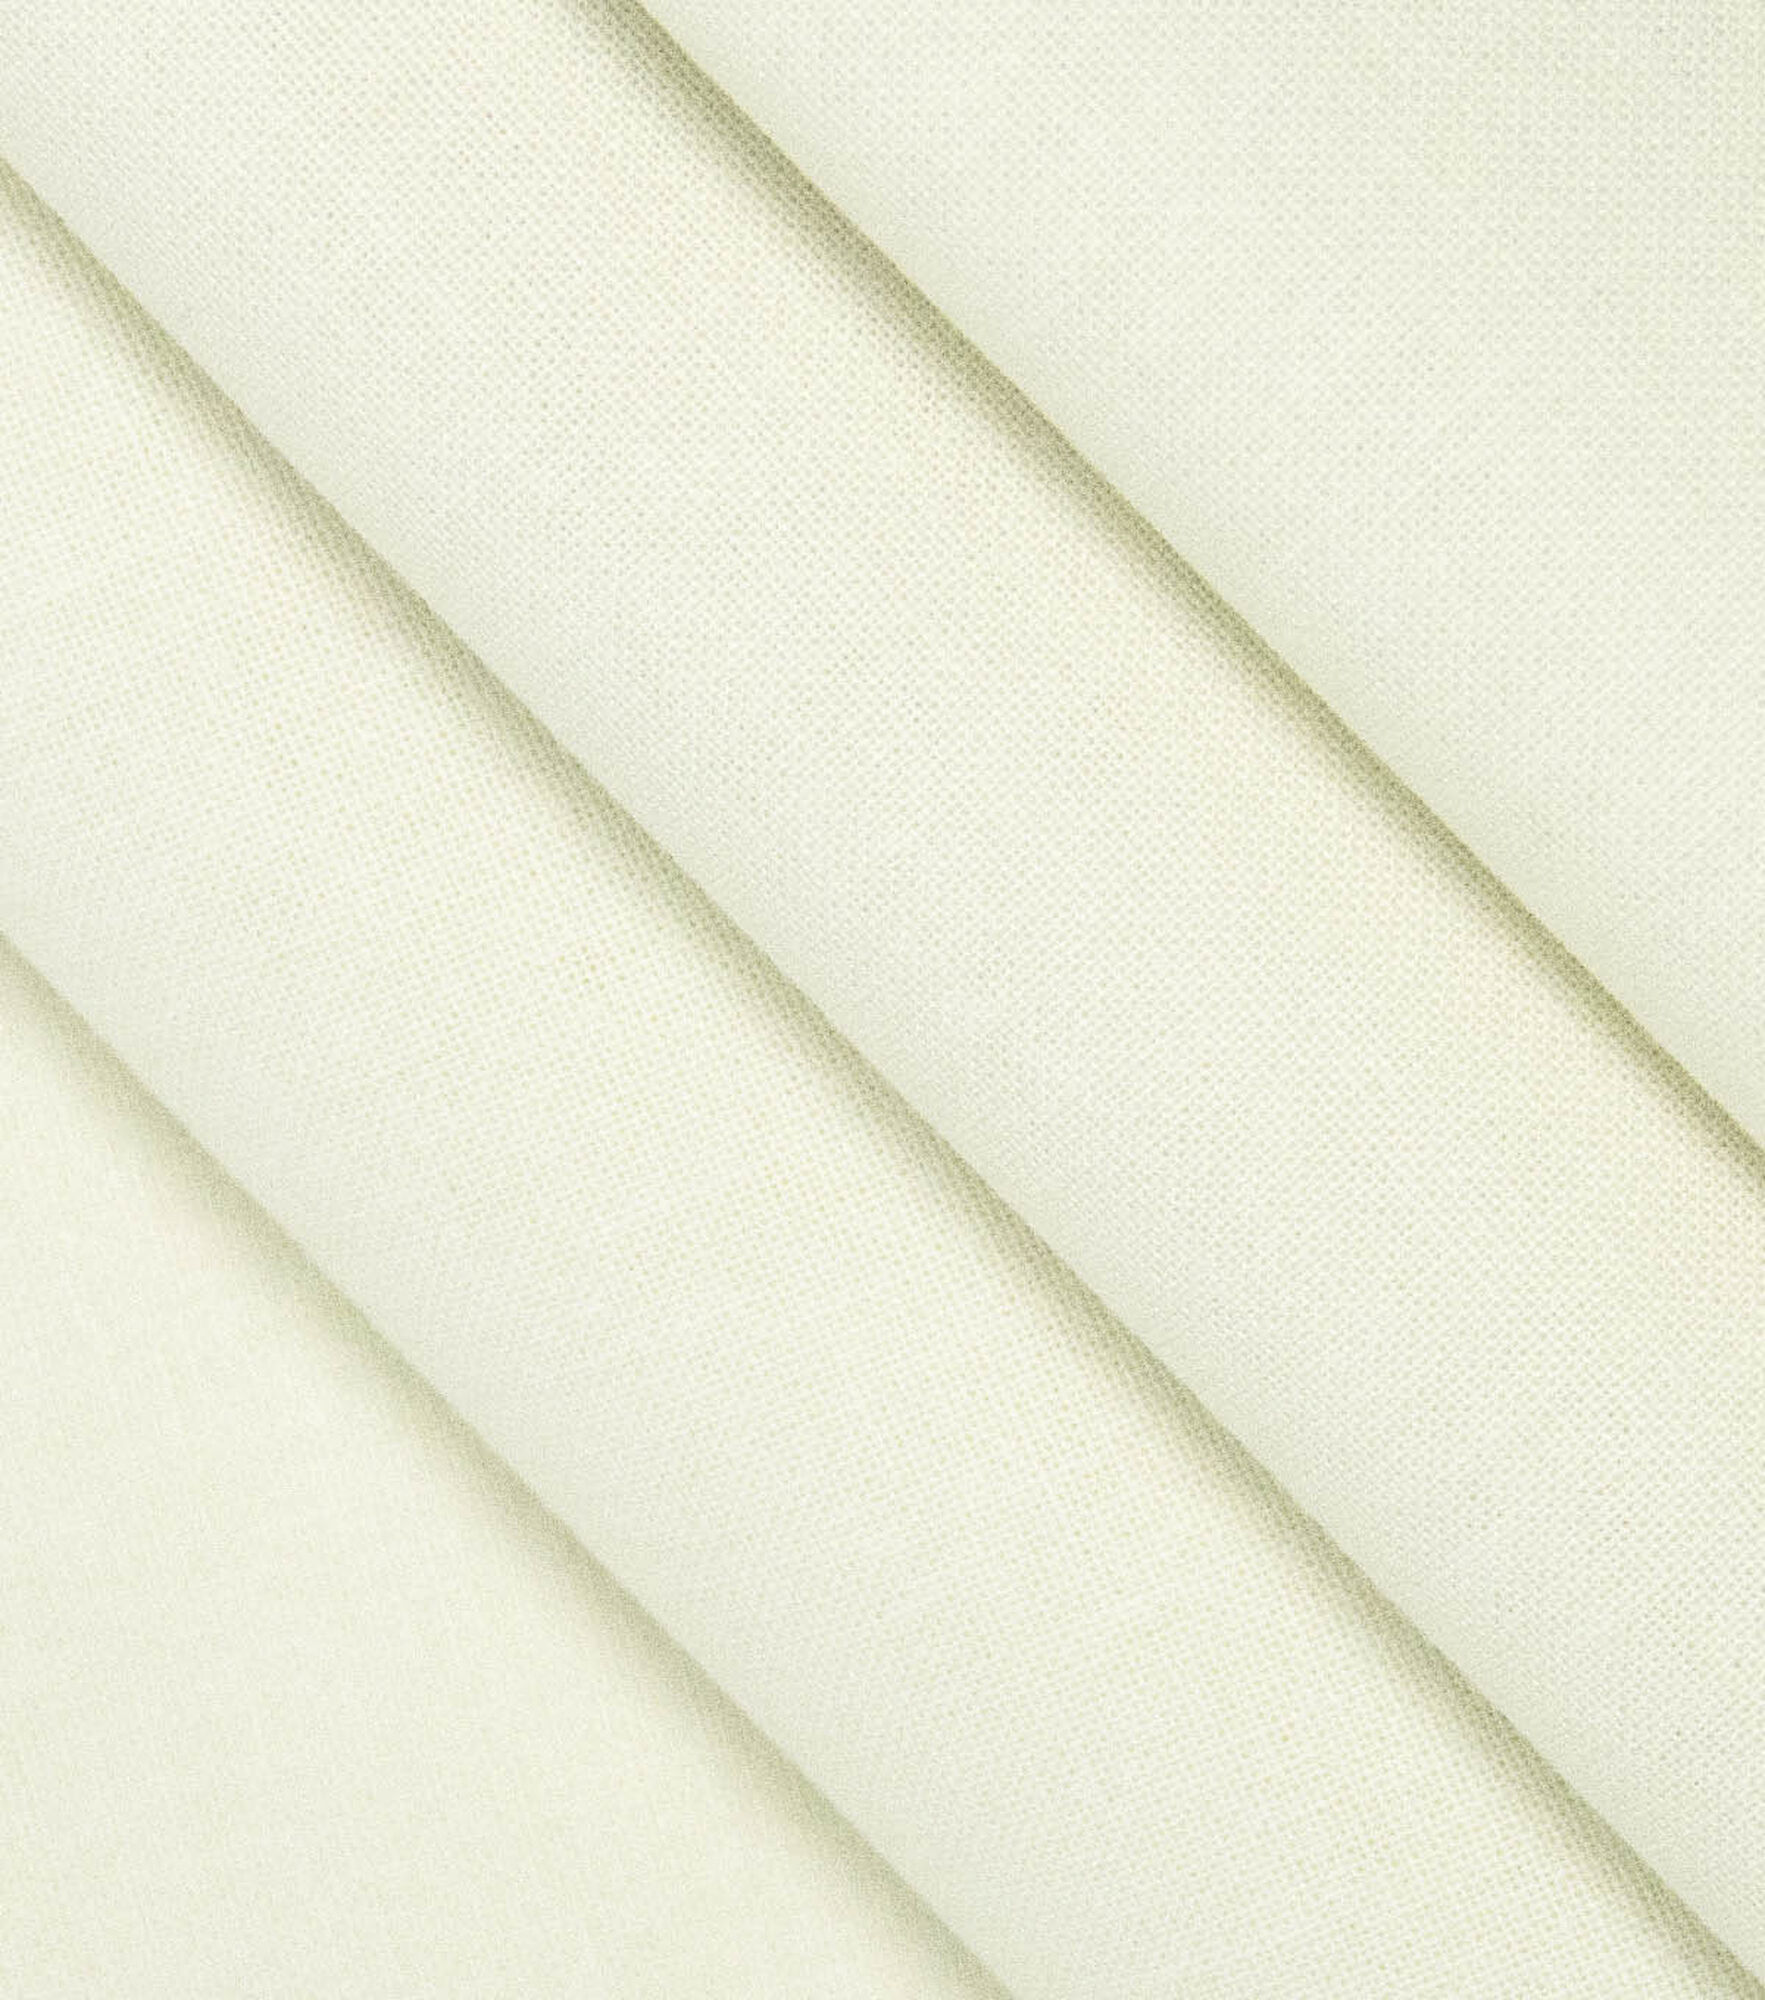 Cotton Fabric Pattern Cotton Fabric Sewing Stock Photo 1038510652